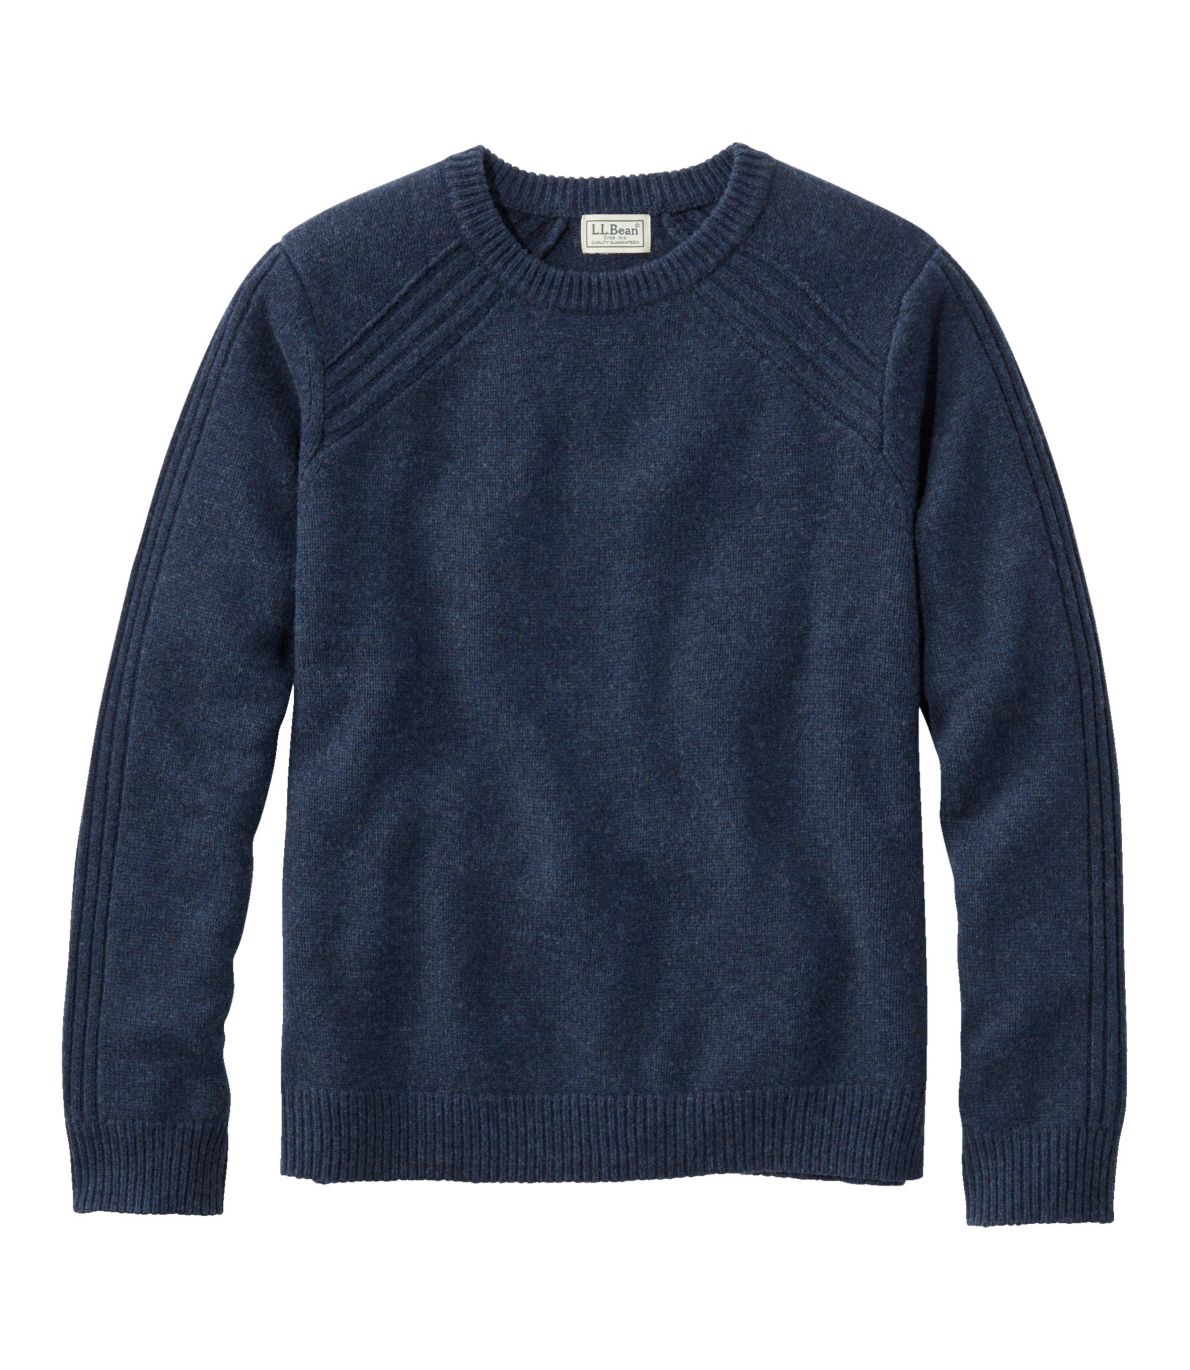 Men's Rangeley Merino Sweater, Crewneck